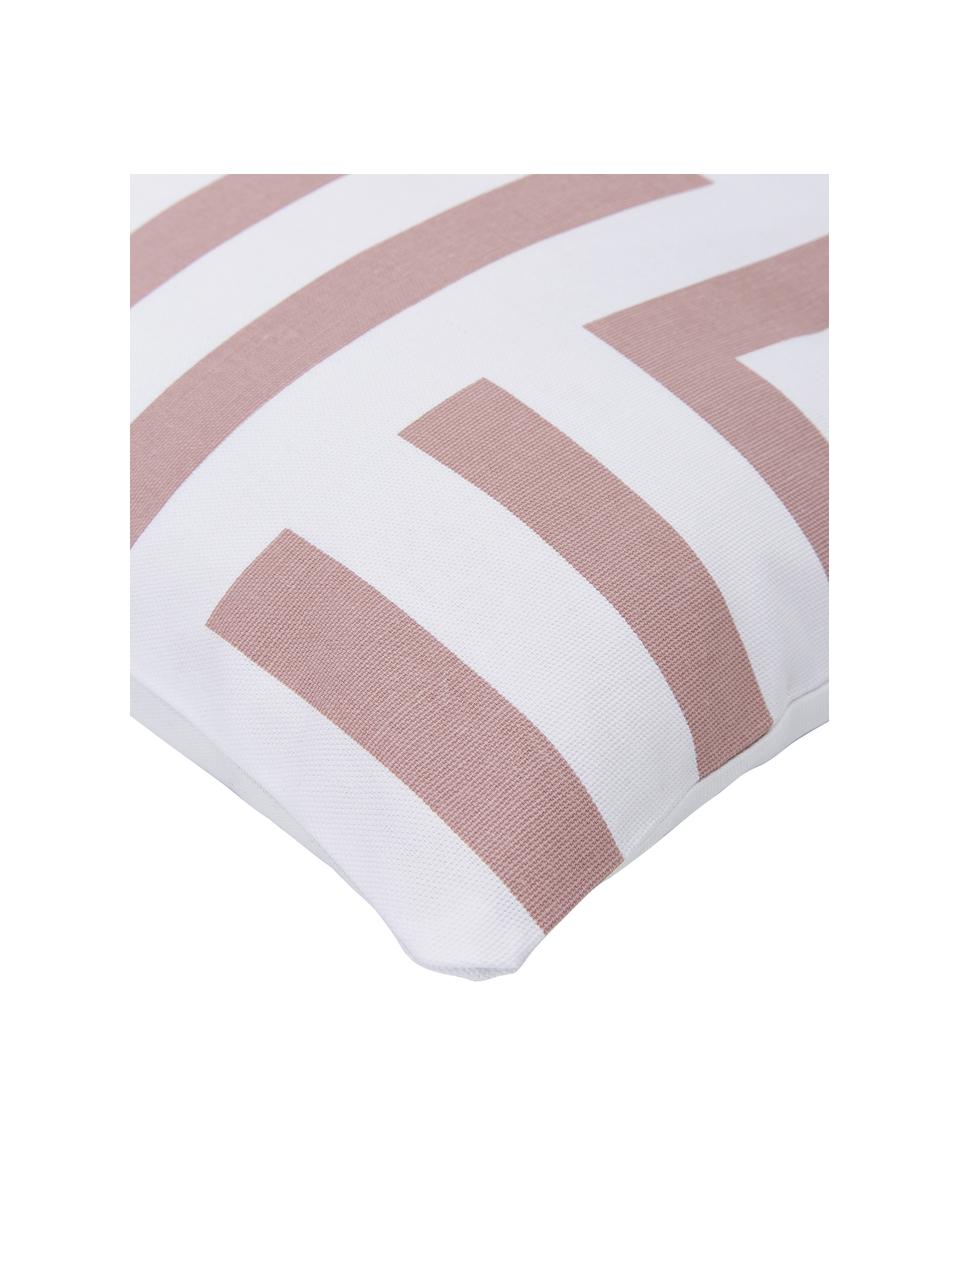 Federa arredo in cotone con motivo grafico Bram, 100% cotone, Bianco, rosa cipria, Larg. 45 x Lung. 45 cm